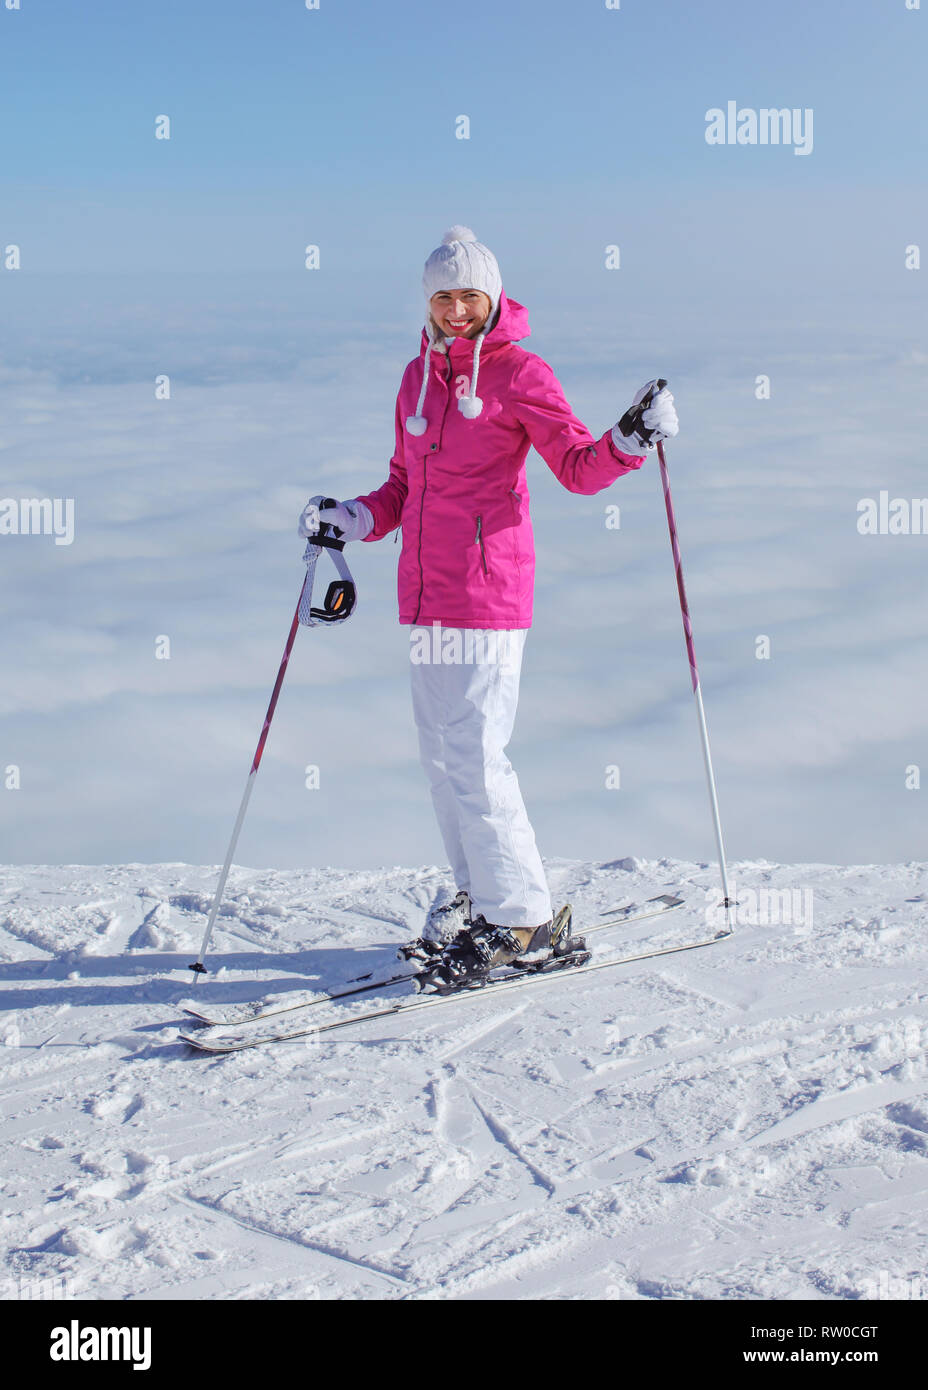 Frau in rosa Jacke, Ski Stöcke und Skier, am Rand des Hügels stehend, nur Wolken unter, lächelnd Stockfoto